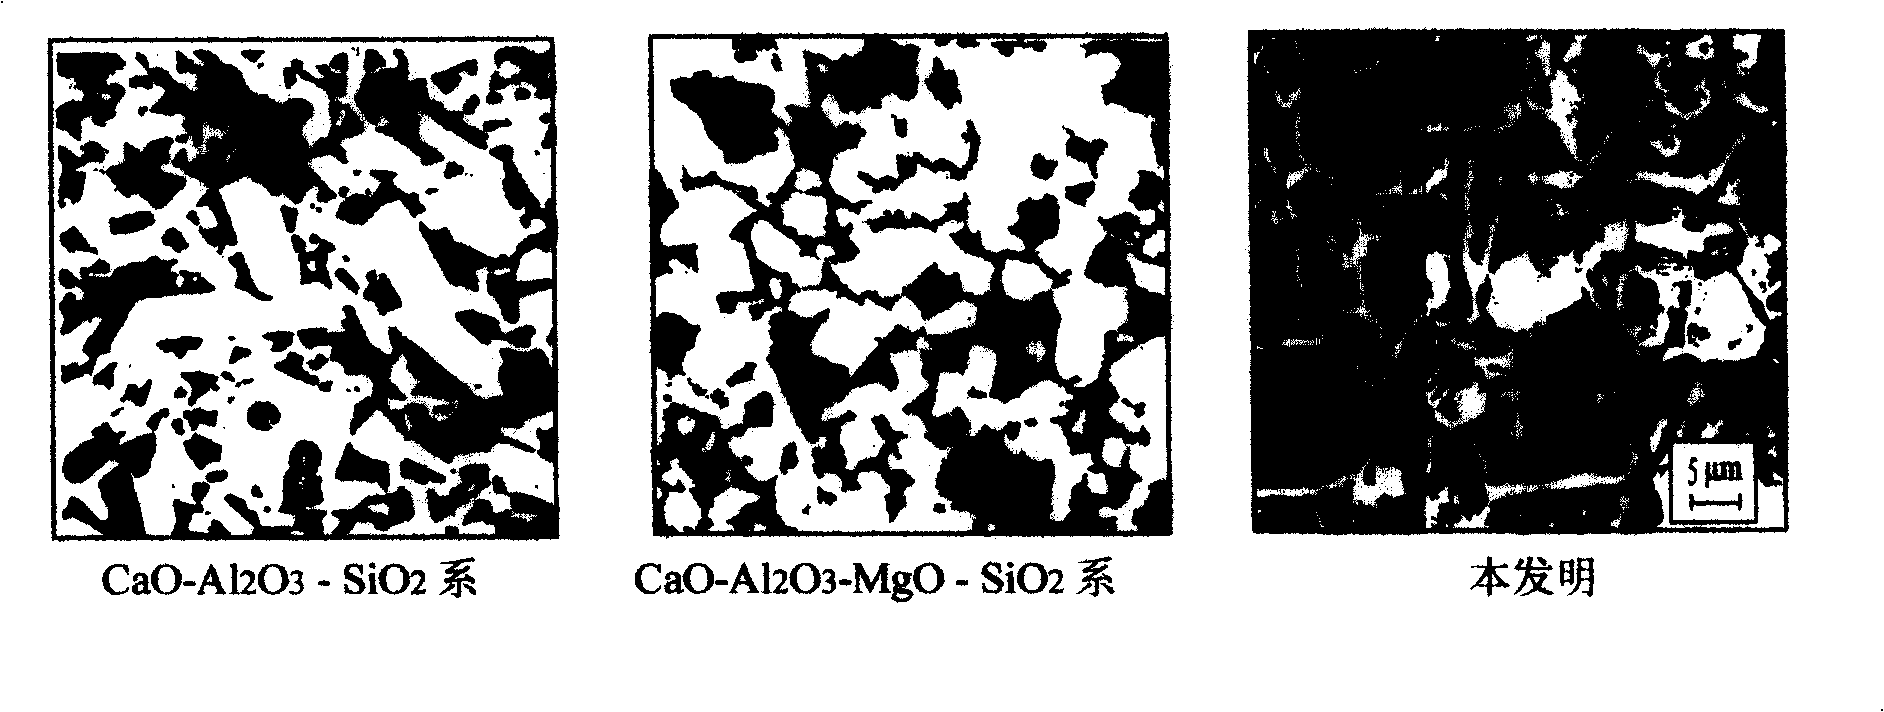 CaO-Al2O3-MgO-ZrO2-SiO2 series aluminum oxide electronic ceramics